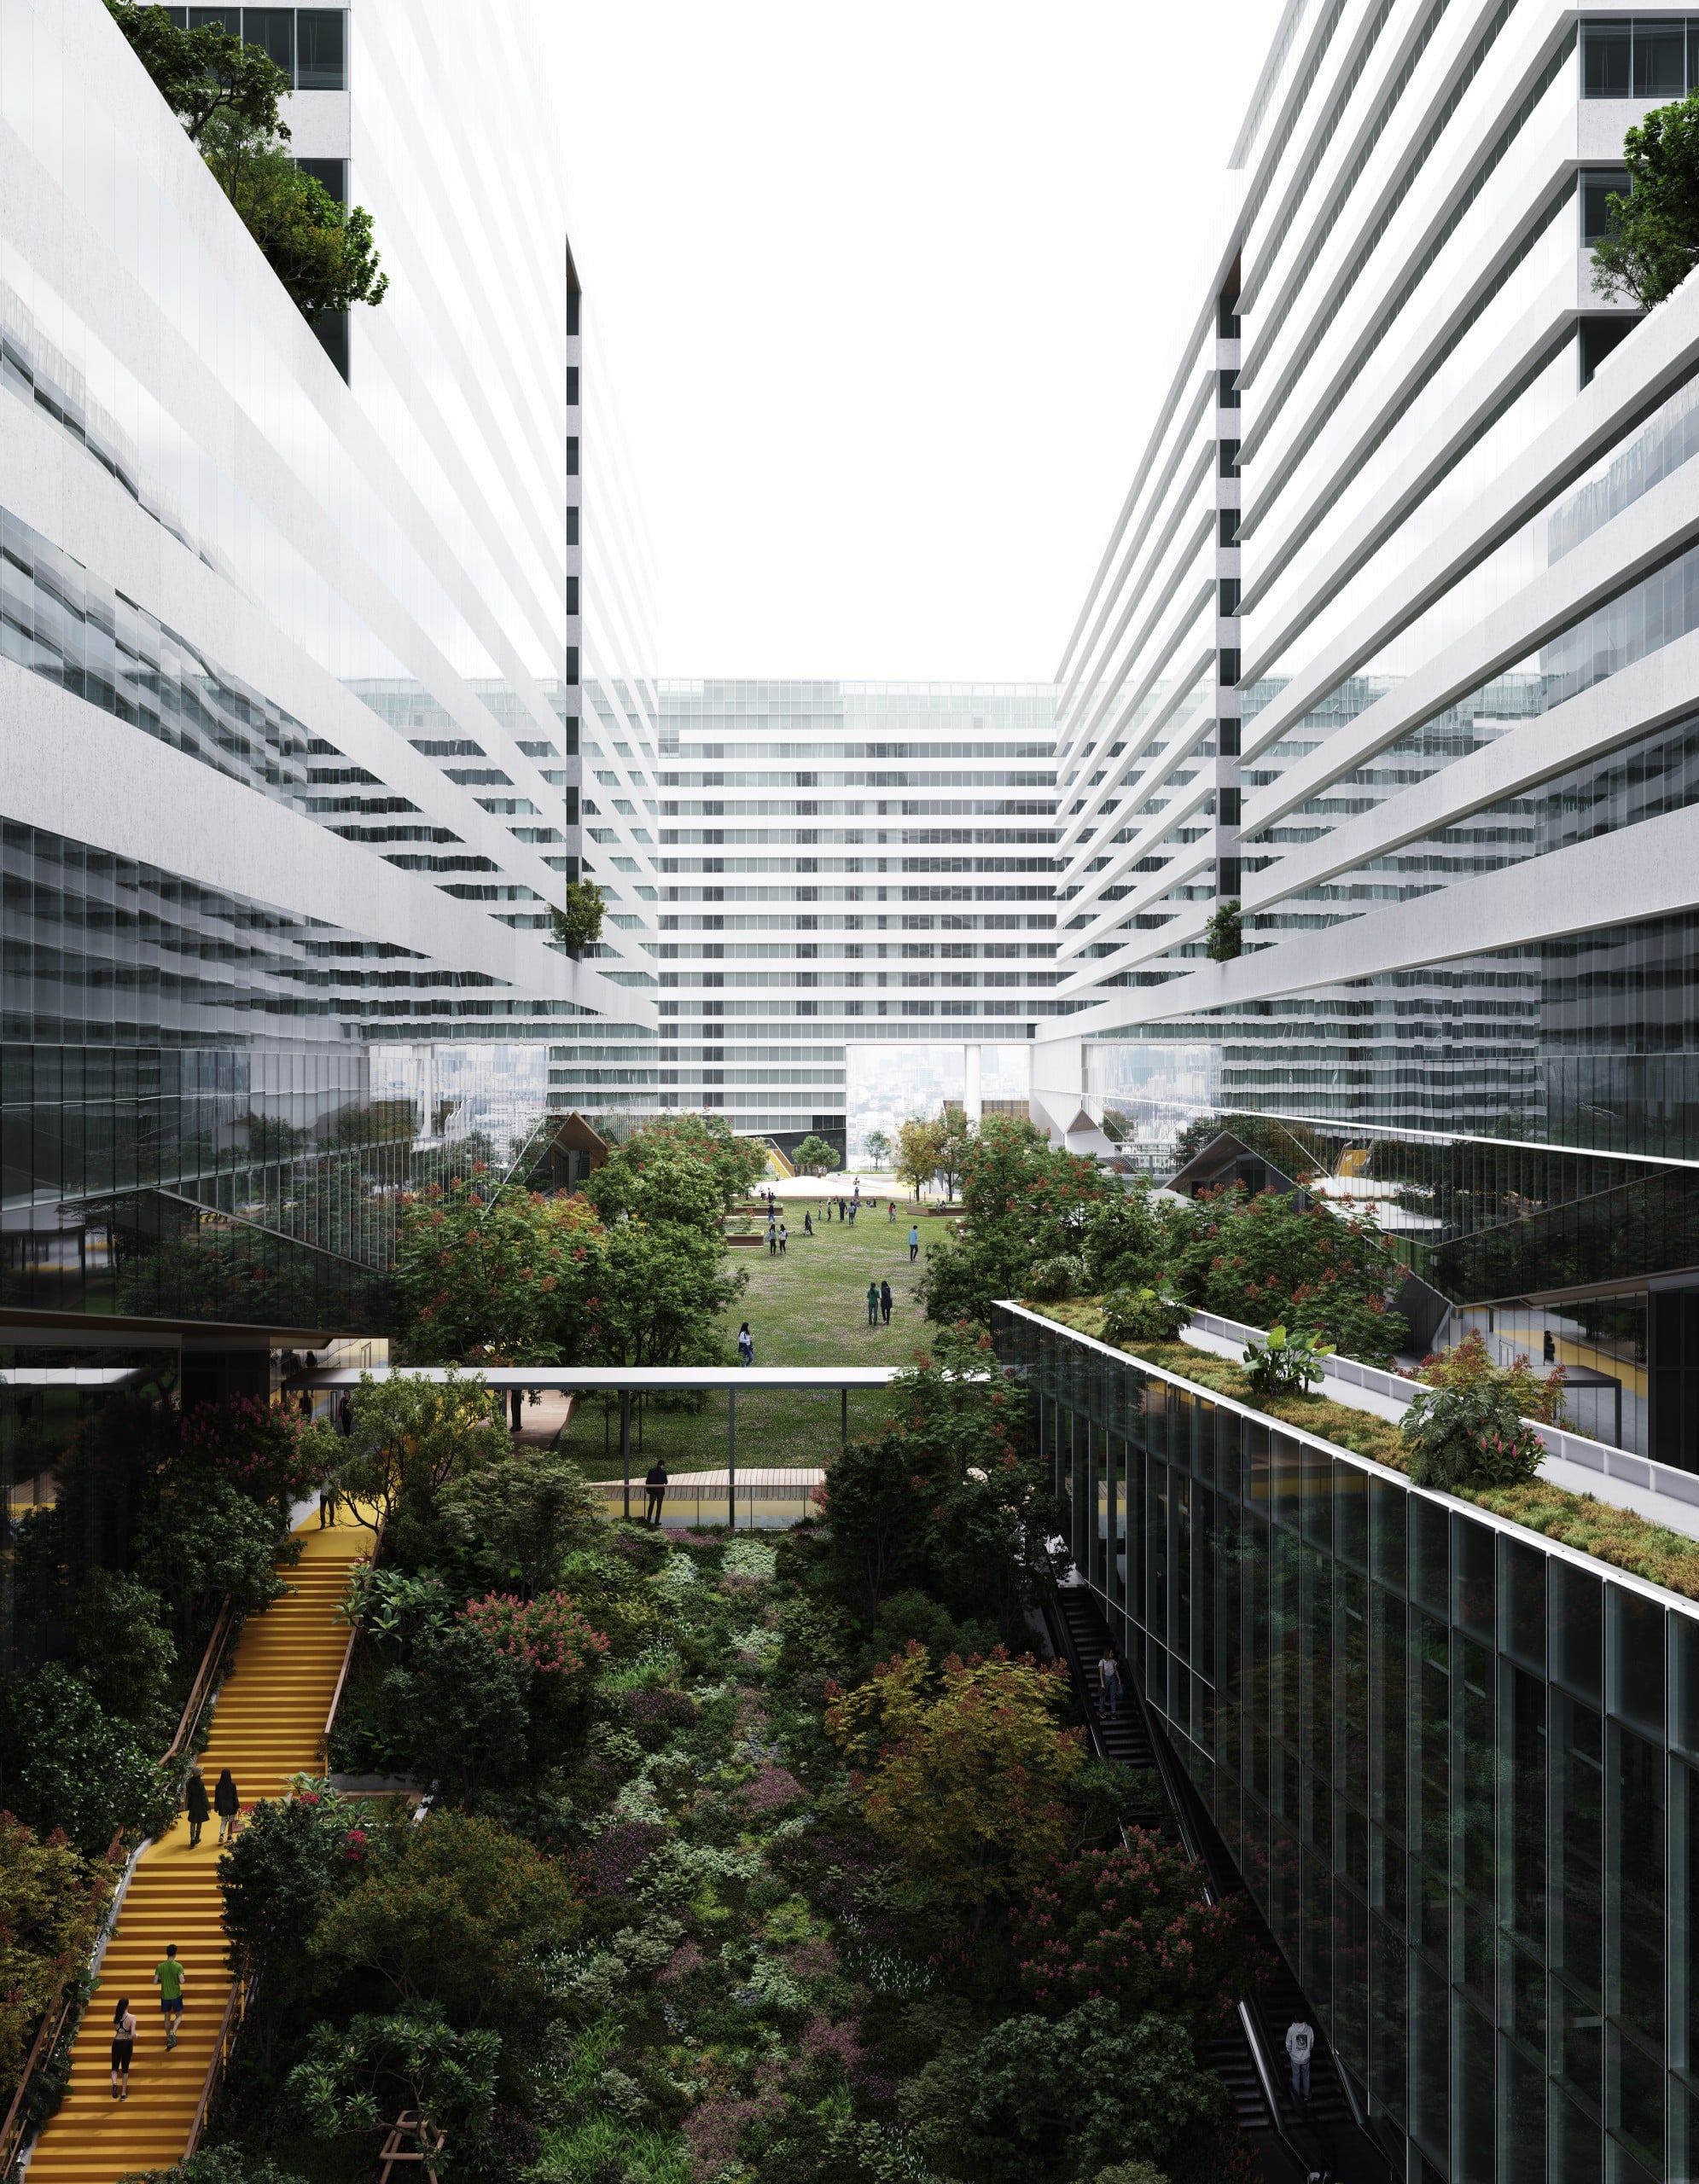 Mit seiner Nachhaltigkeit und Flexibilität soll der Komplex ein Beispiel für die Zukunft urbaner Strukturen darstellen. Bildquelle: Snøhetta